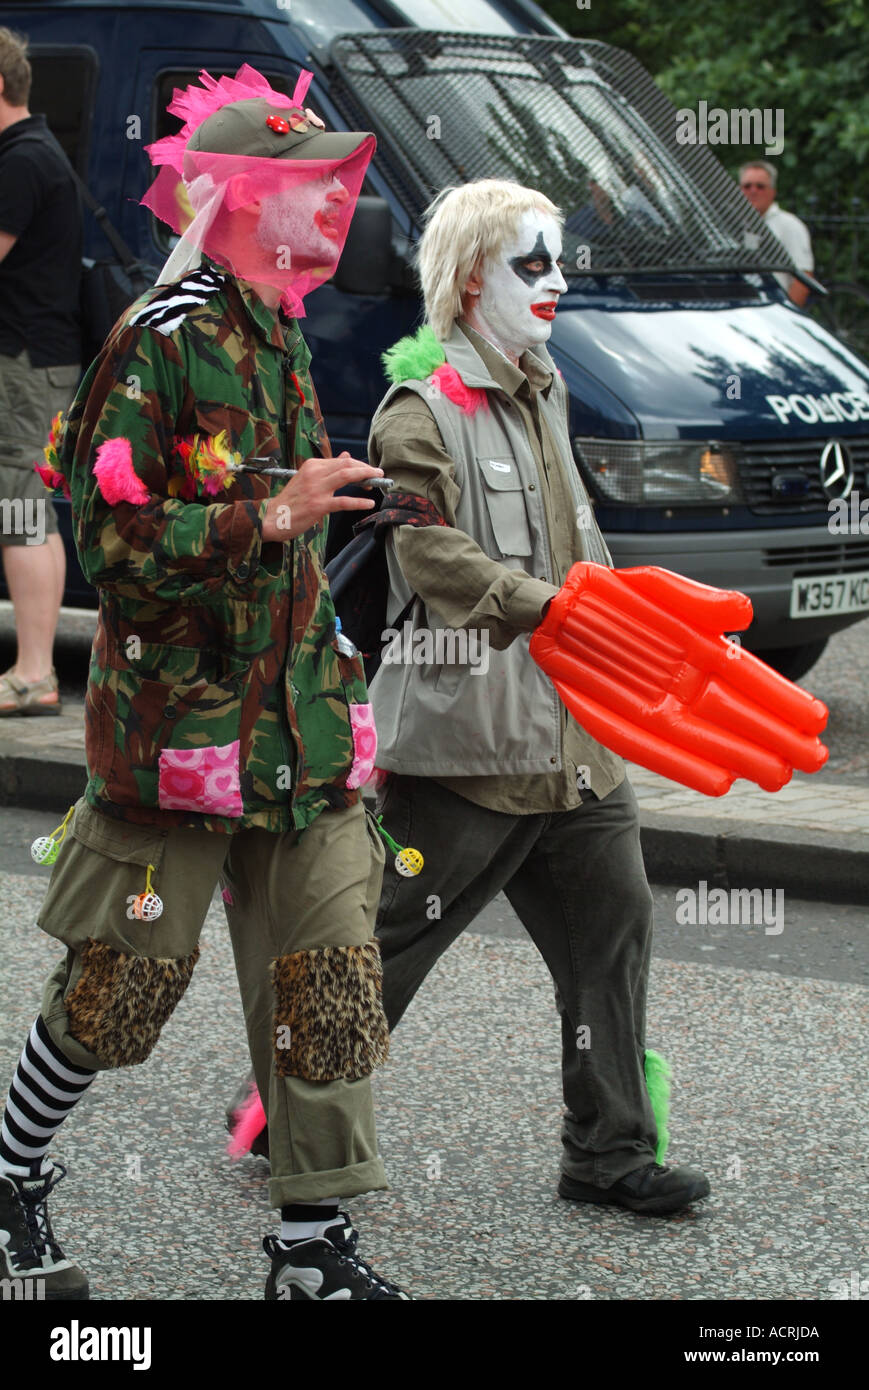 Deux membres de l'armée clandestine Insurgent Rebel Clown marchant sur Princes Street, Édimbourg, Écosse, Royaume-Uni Banque D'Images